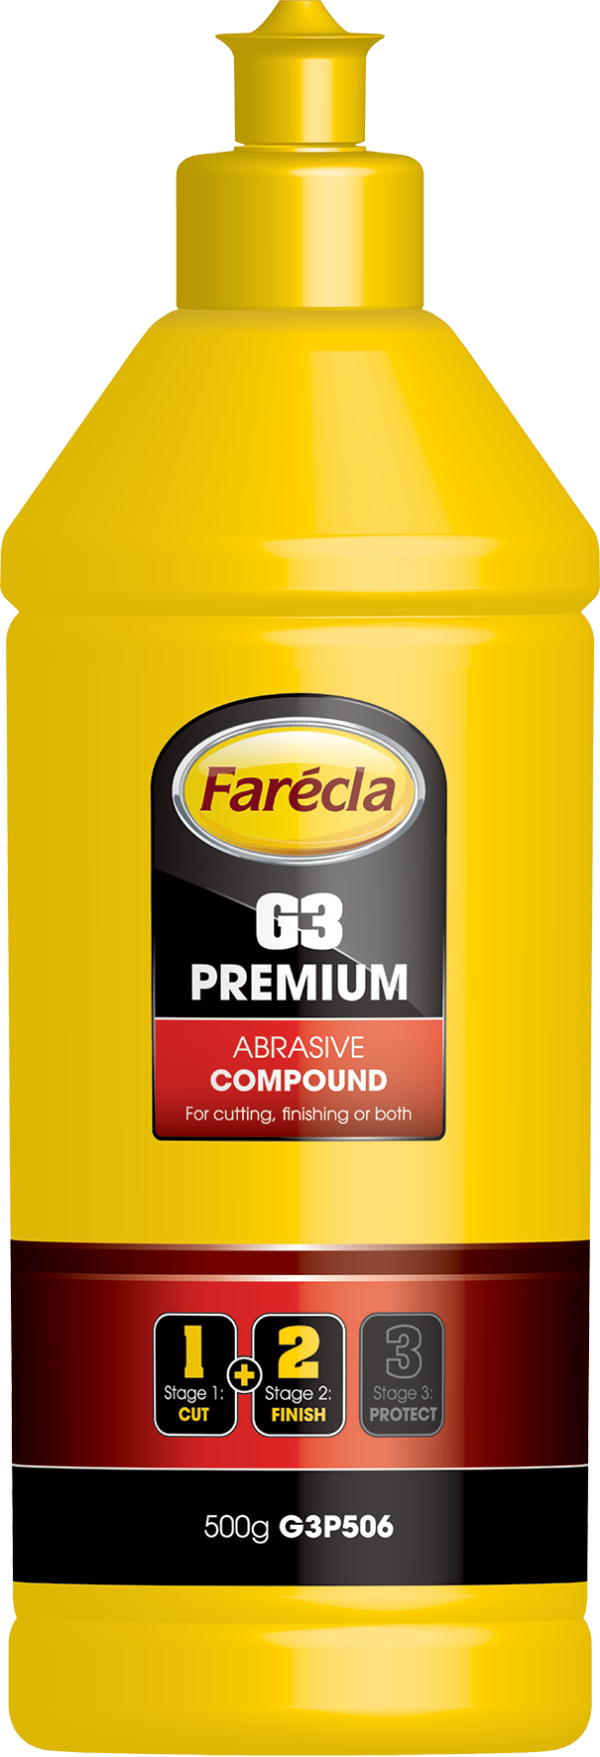 FARECLA G3 PREMIUM 500g-G3P506